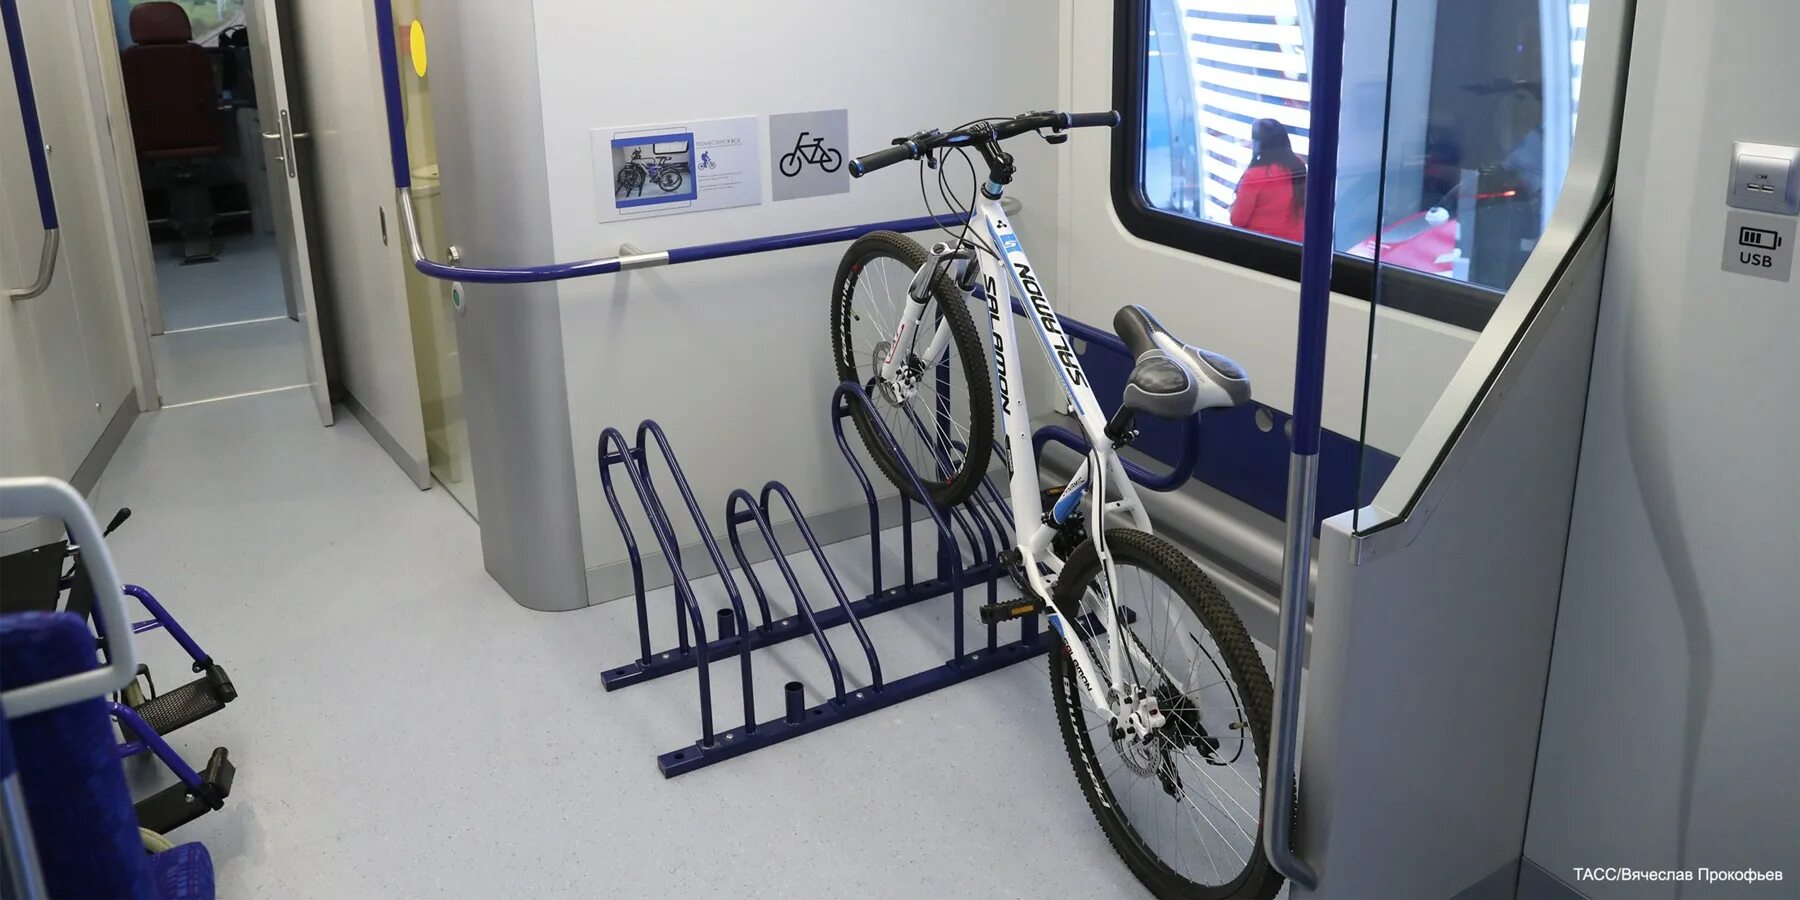 Авито доставка велосипед можно ли. Крепление для велосипеда в электричке. Стойки для велосипеда в электричке. В метро с велосипедом. Провоз велосипеда в электричке.